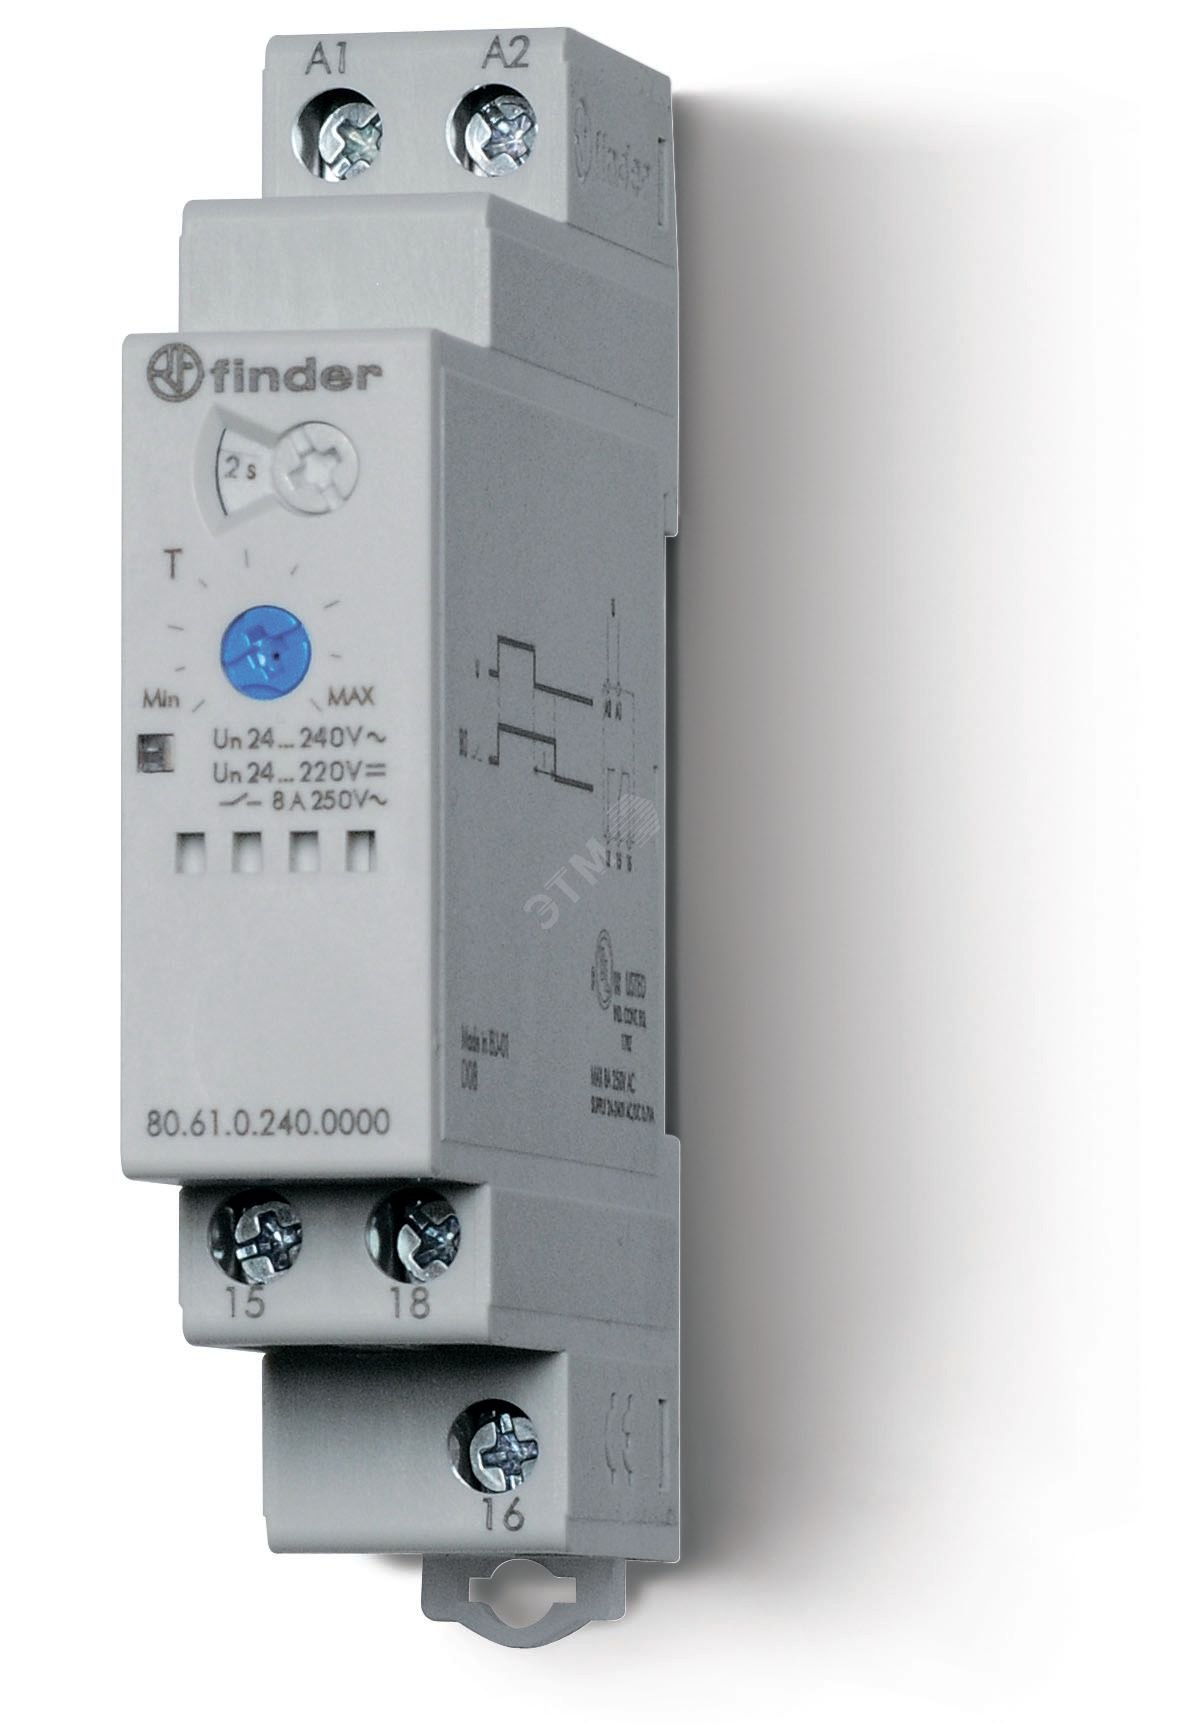 Таймер модульный 1-функциональный (ВI), питание 24…240В АС/DC, 1CO 8A, ширина 17.5мм, регулировка времени 0.05с…180c, степень защиты IP20 80.61.0.240.0000 FINDER